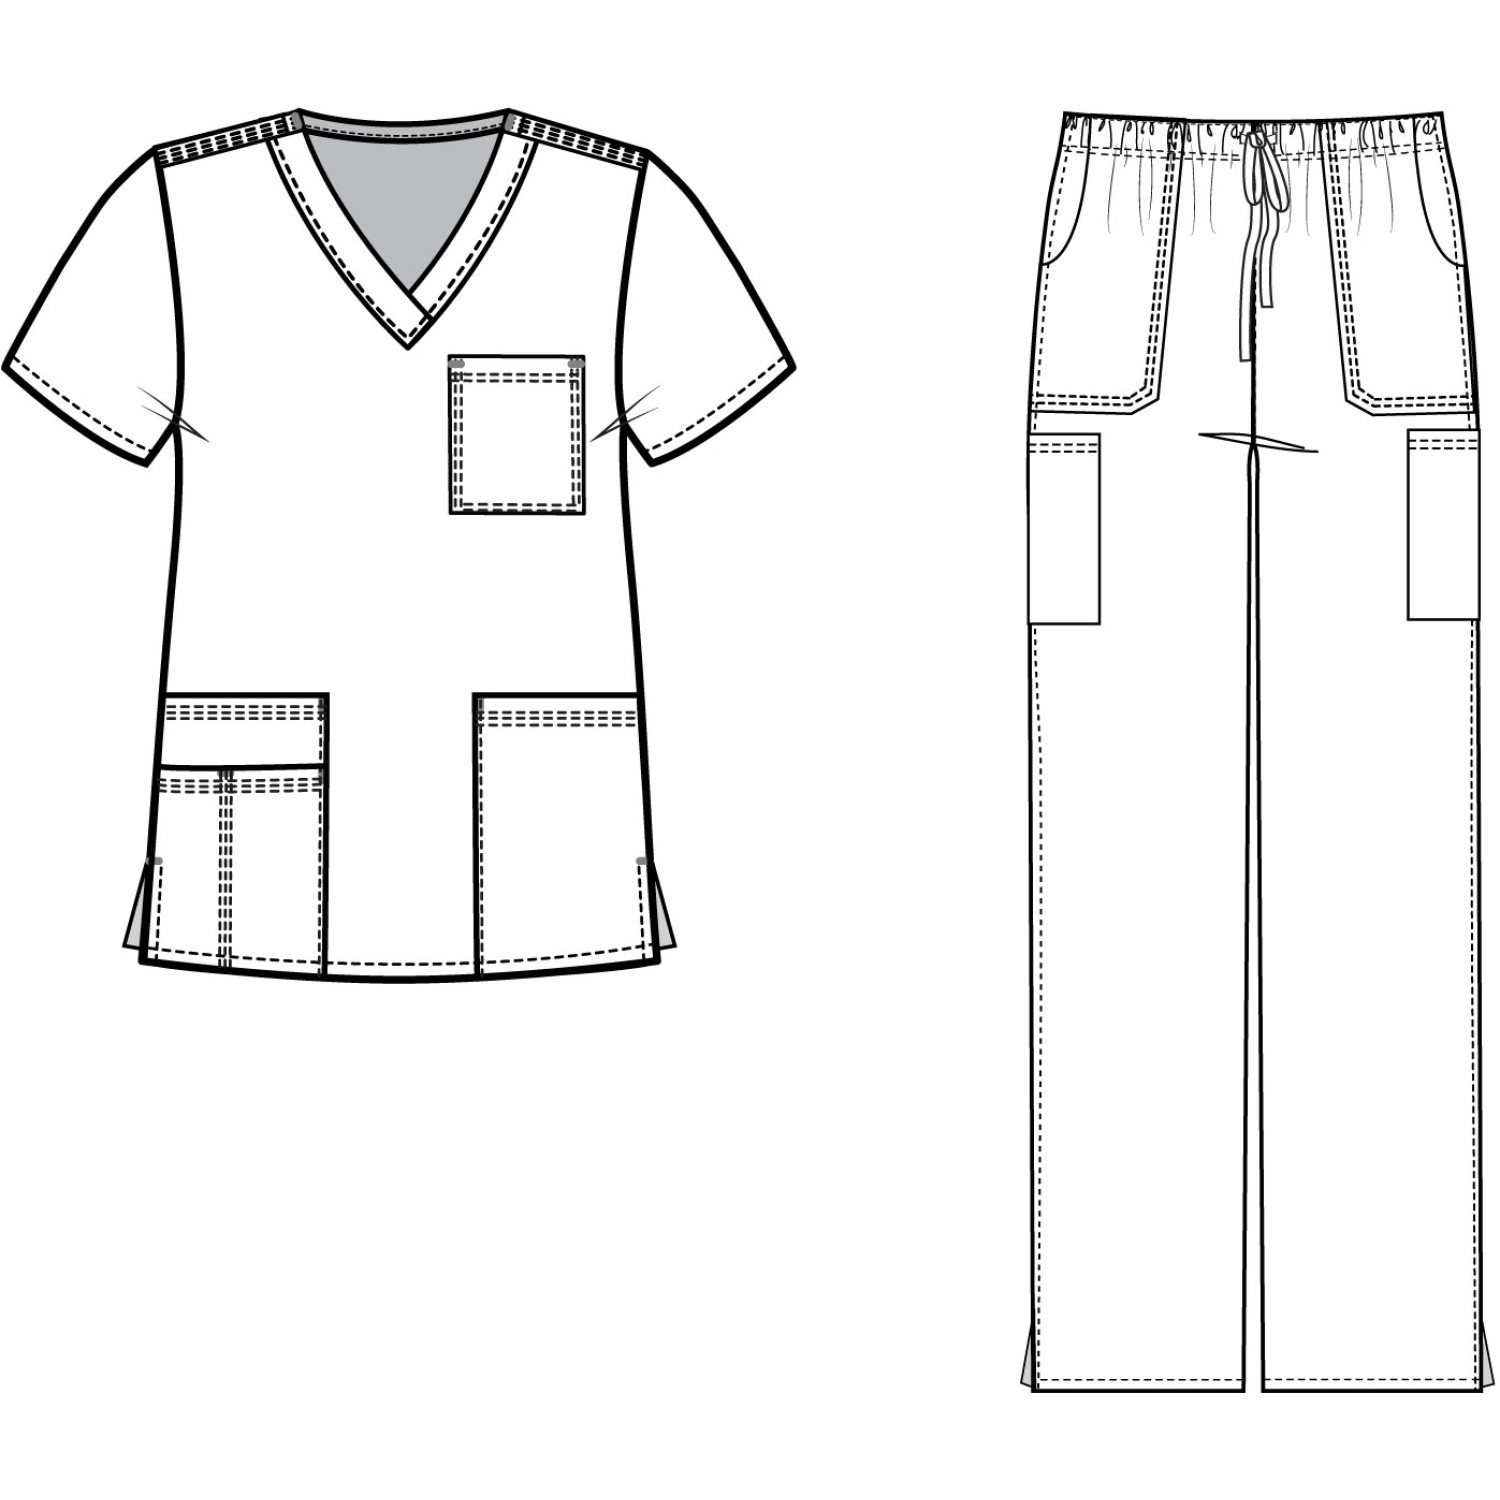 MedGear Womens Scrubs Set Medical Uniform, 4-Pocket Top & Multi-pocket ...